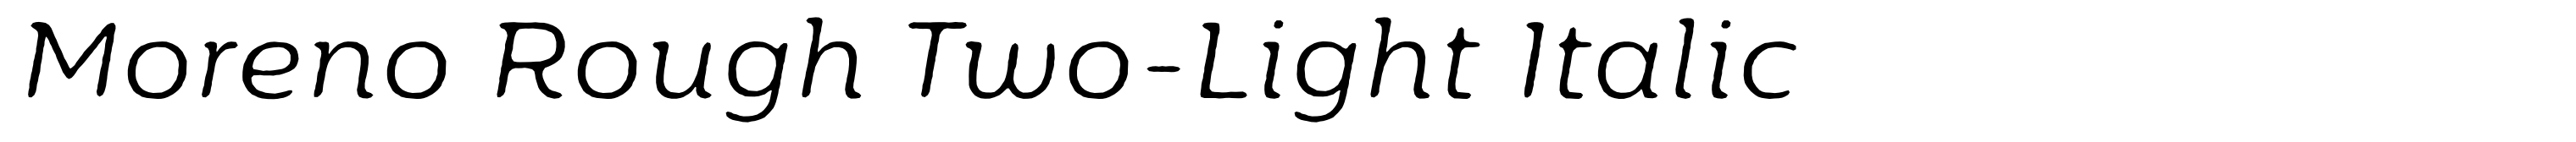 Moreno Rough Two-Light Italic